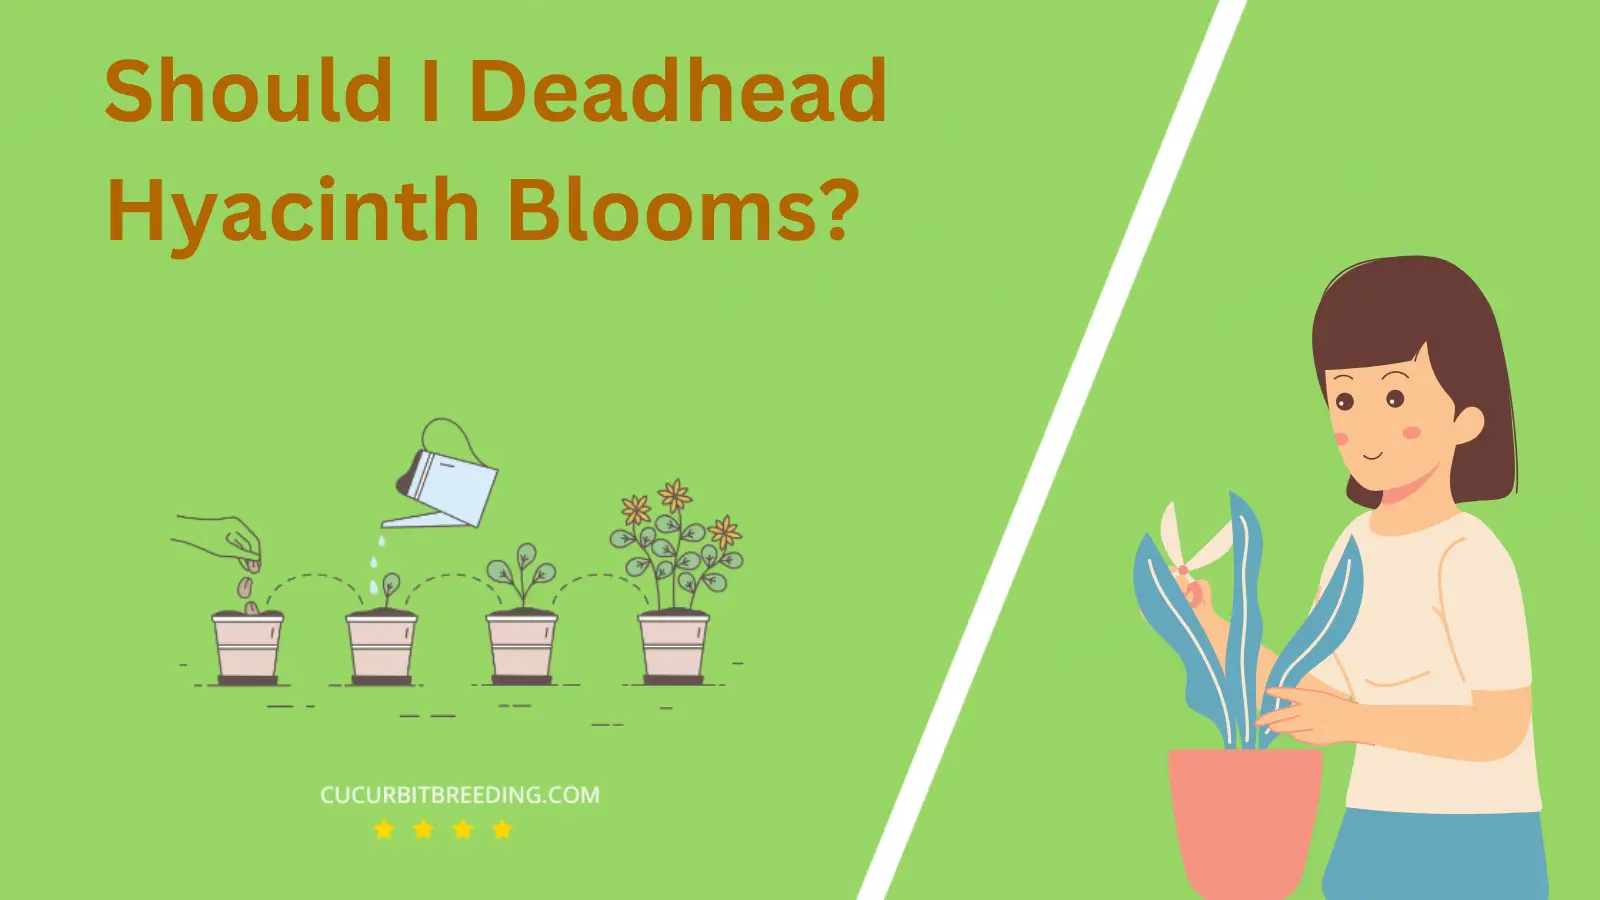 Should I Deadhead Hyacinth Blooms?